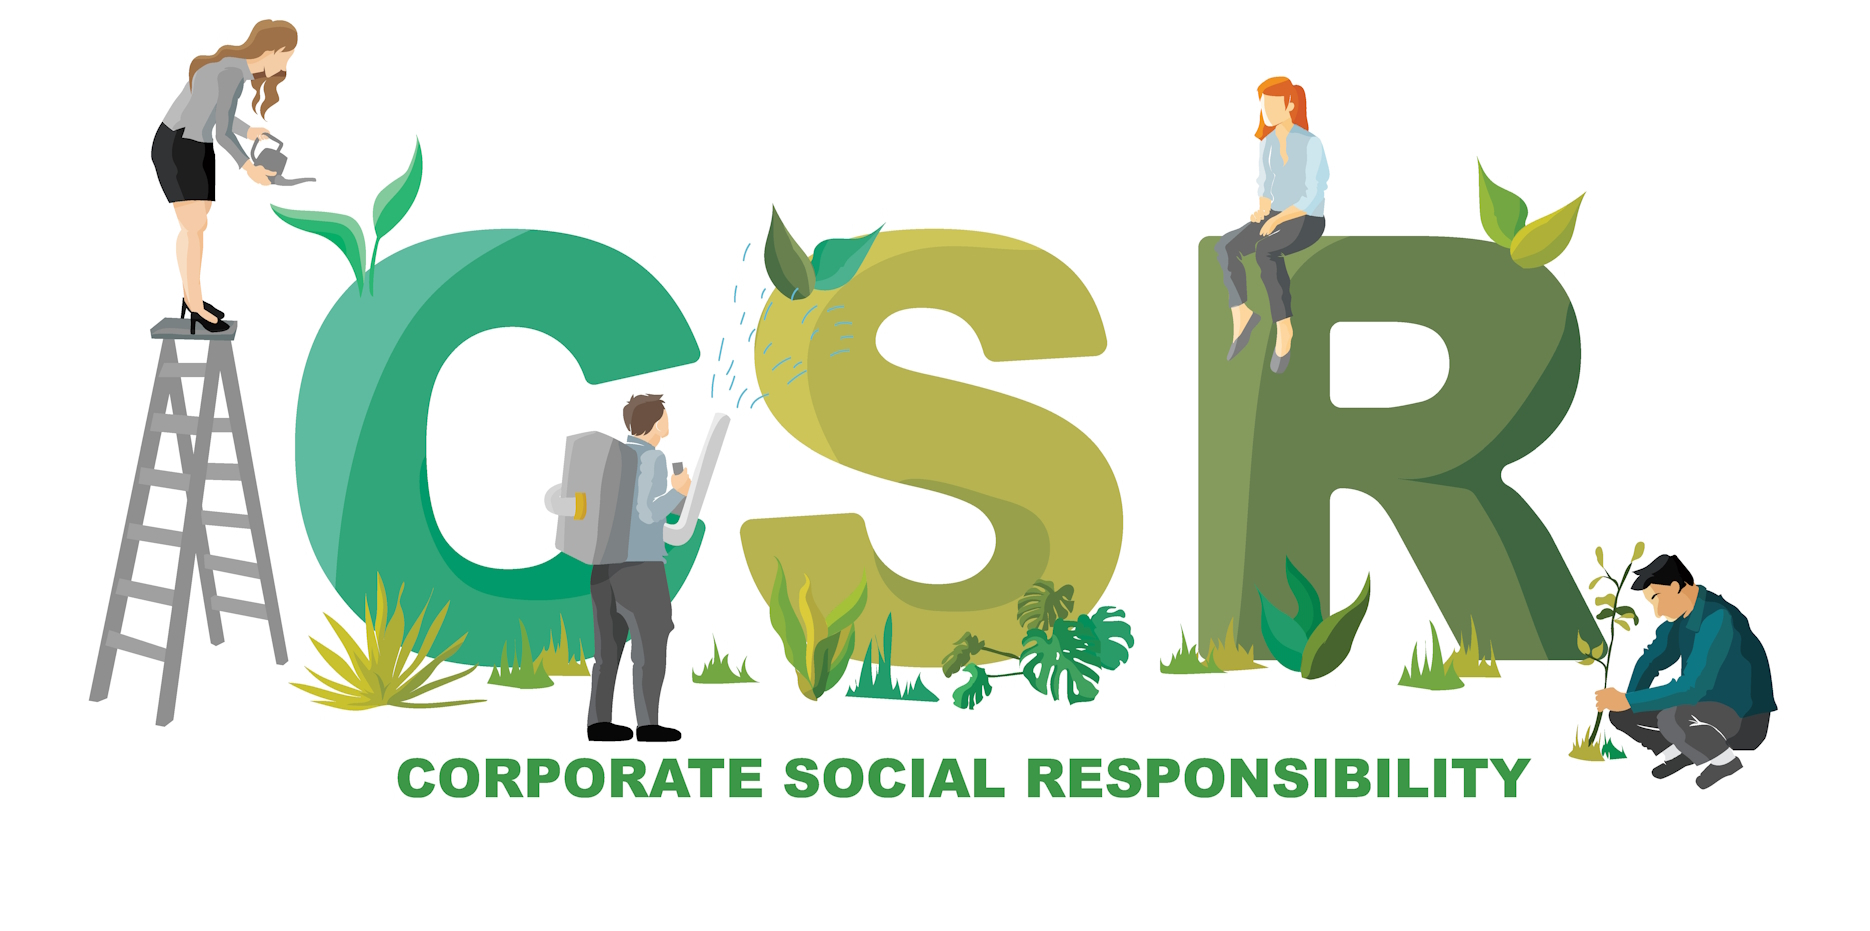 Symbolbild für soziale Verantwortung im Unternehmen, stellvertretend für die Ausbildung mit Leitmotiv CSR